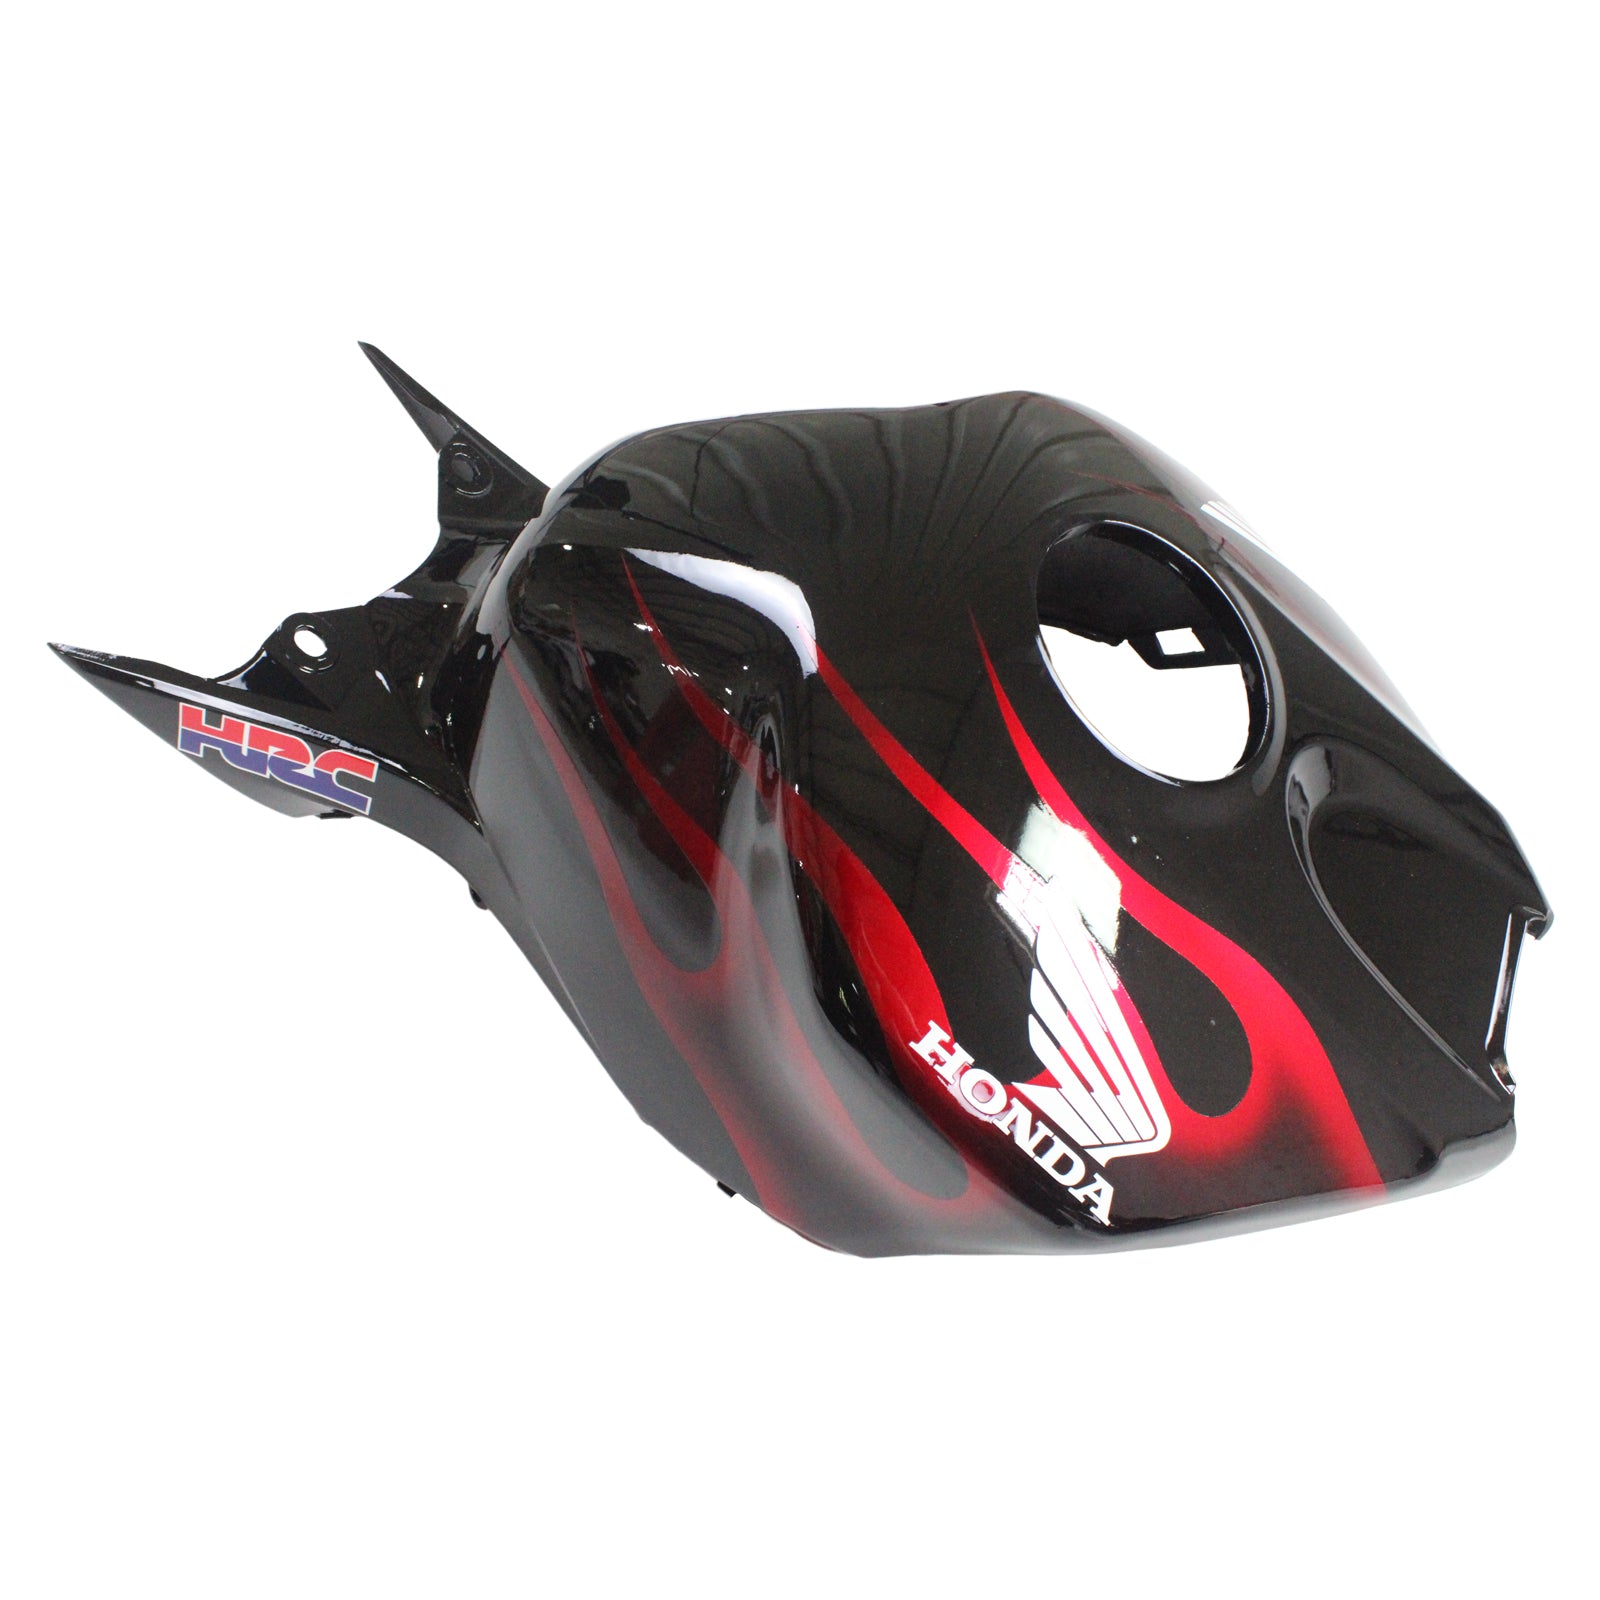 Amotopart Fairings Honda CBR1000RR 2006-2007 Fairing Flame Shark Racing Black & Red Fairing Kit